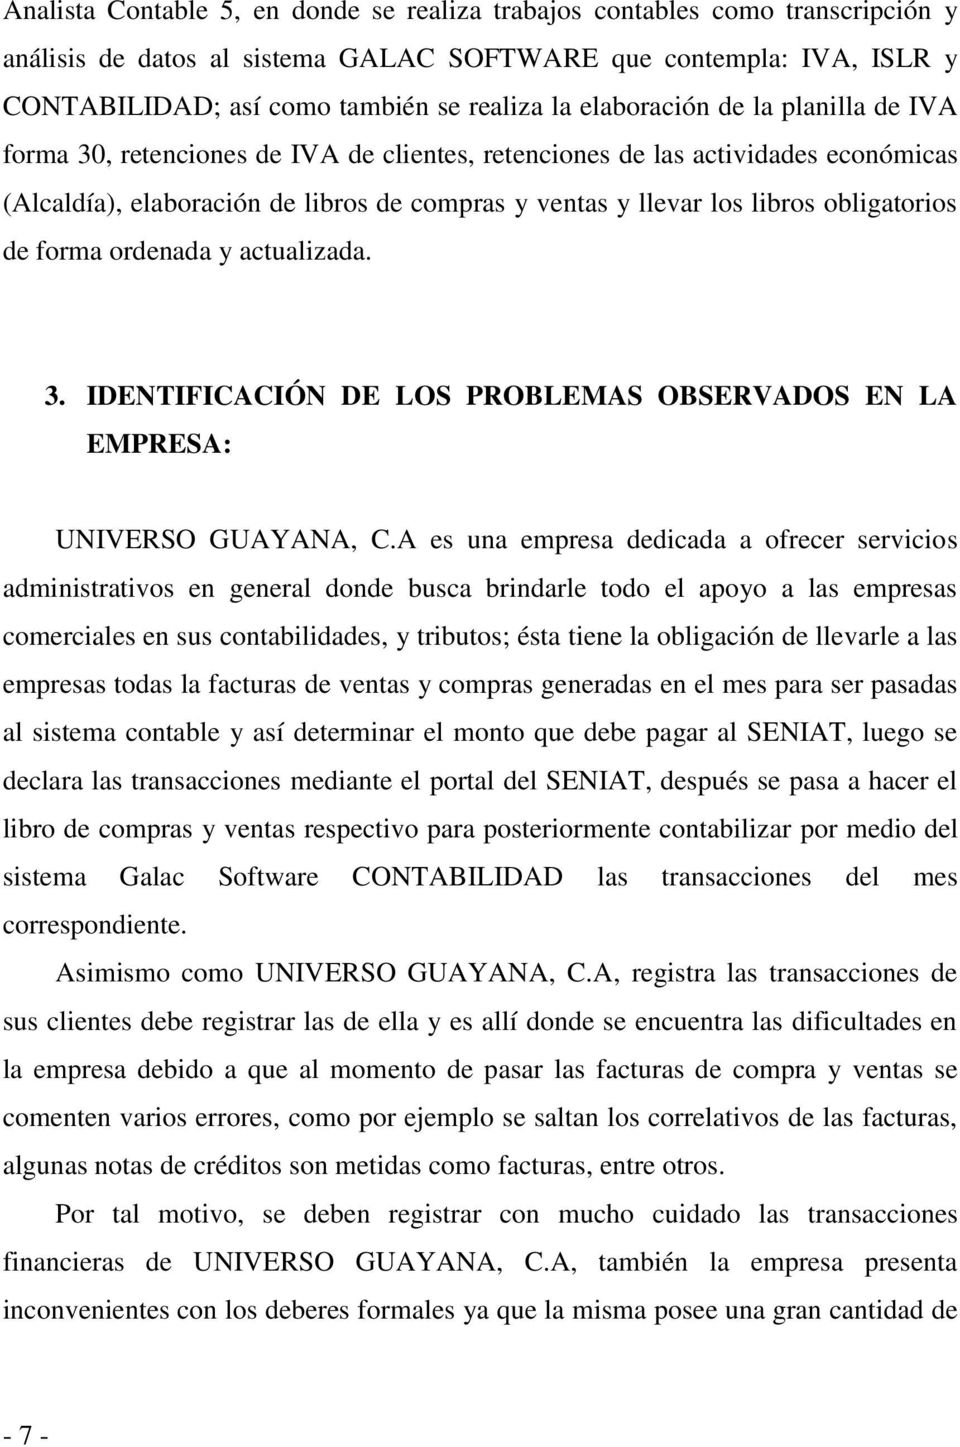 obligatorios de forma ordenada y actualizada. 3. IDENTIFICACIÓN DE LOS PROBLEMAS OBSERVADOS EN LA EMPRESA: UNIVERSO GUAYANA, C.